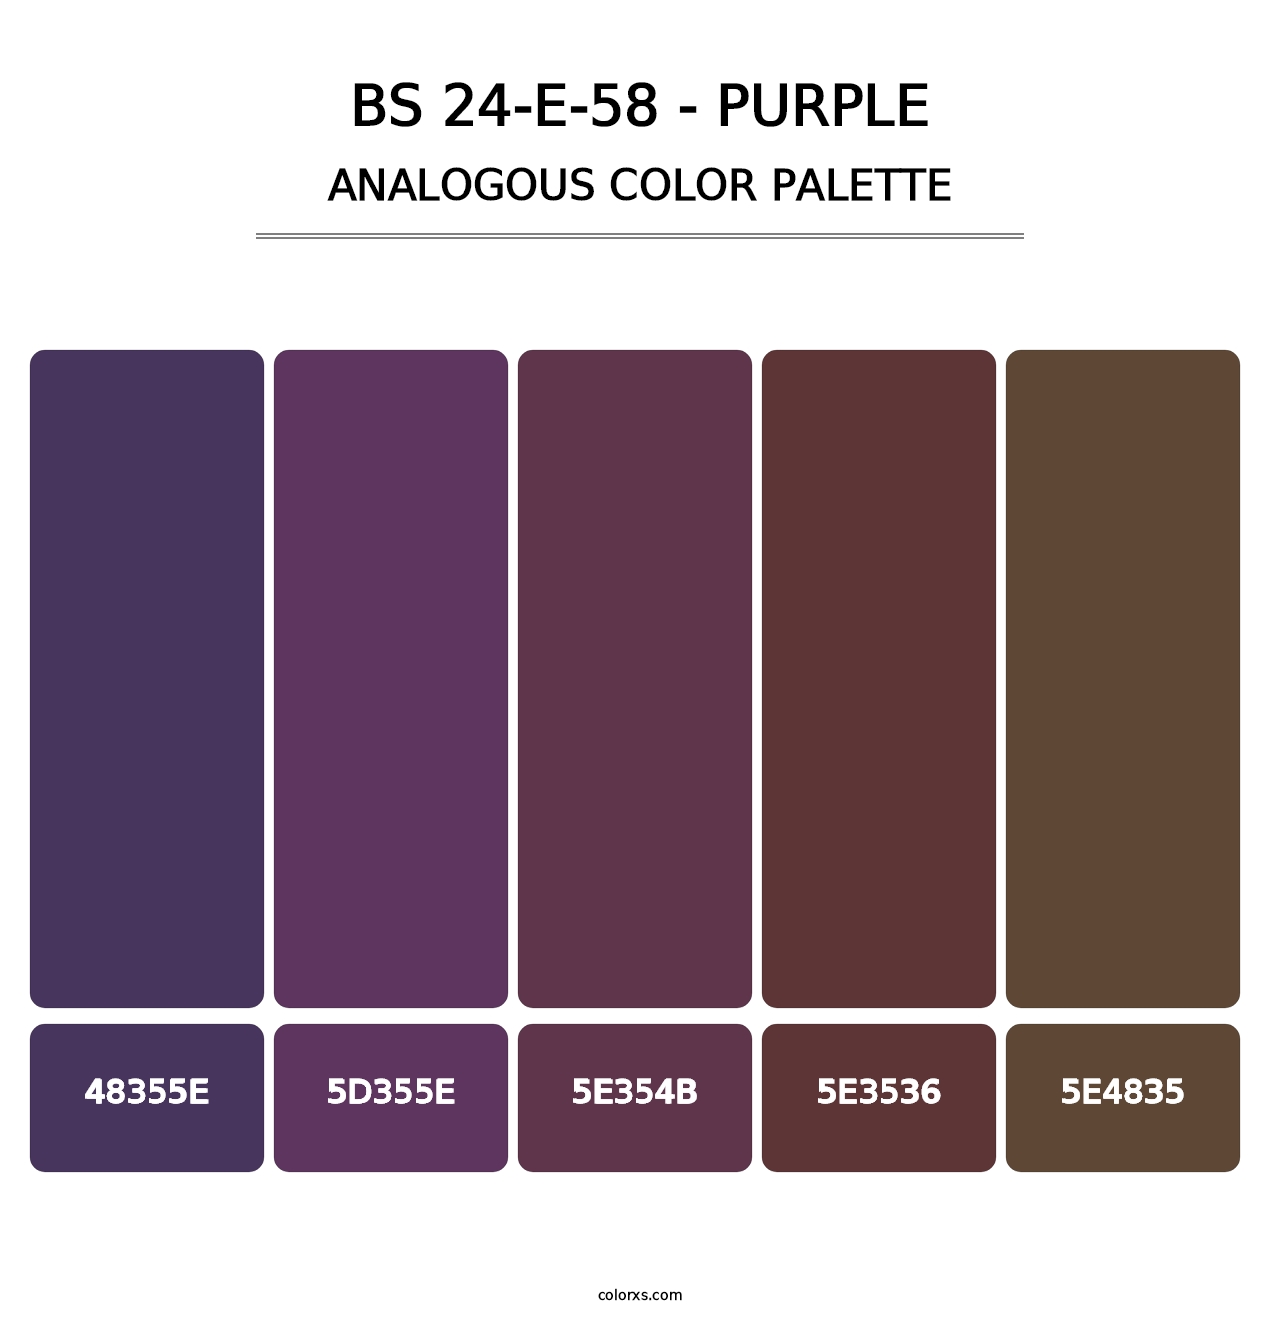 BS 24-E-58 - Purple - Analogous Color Palette